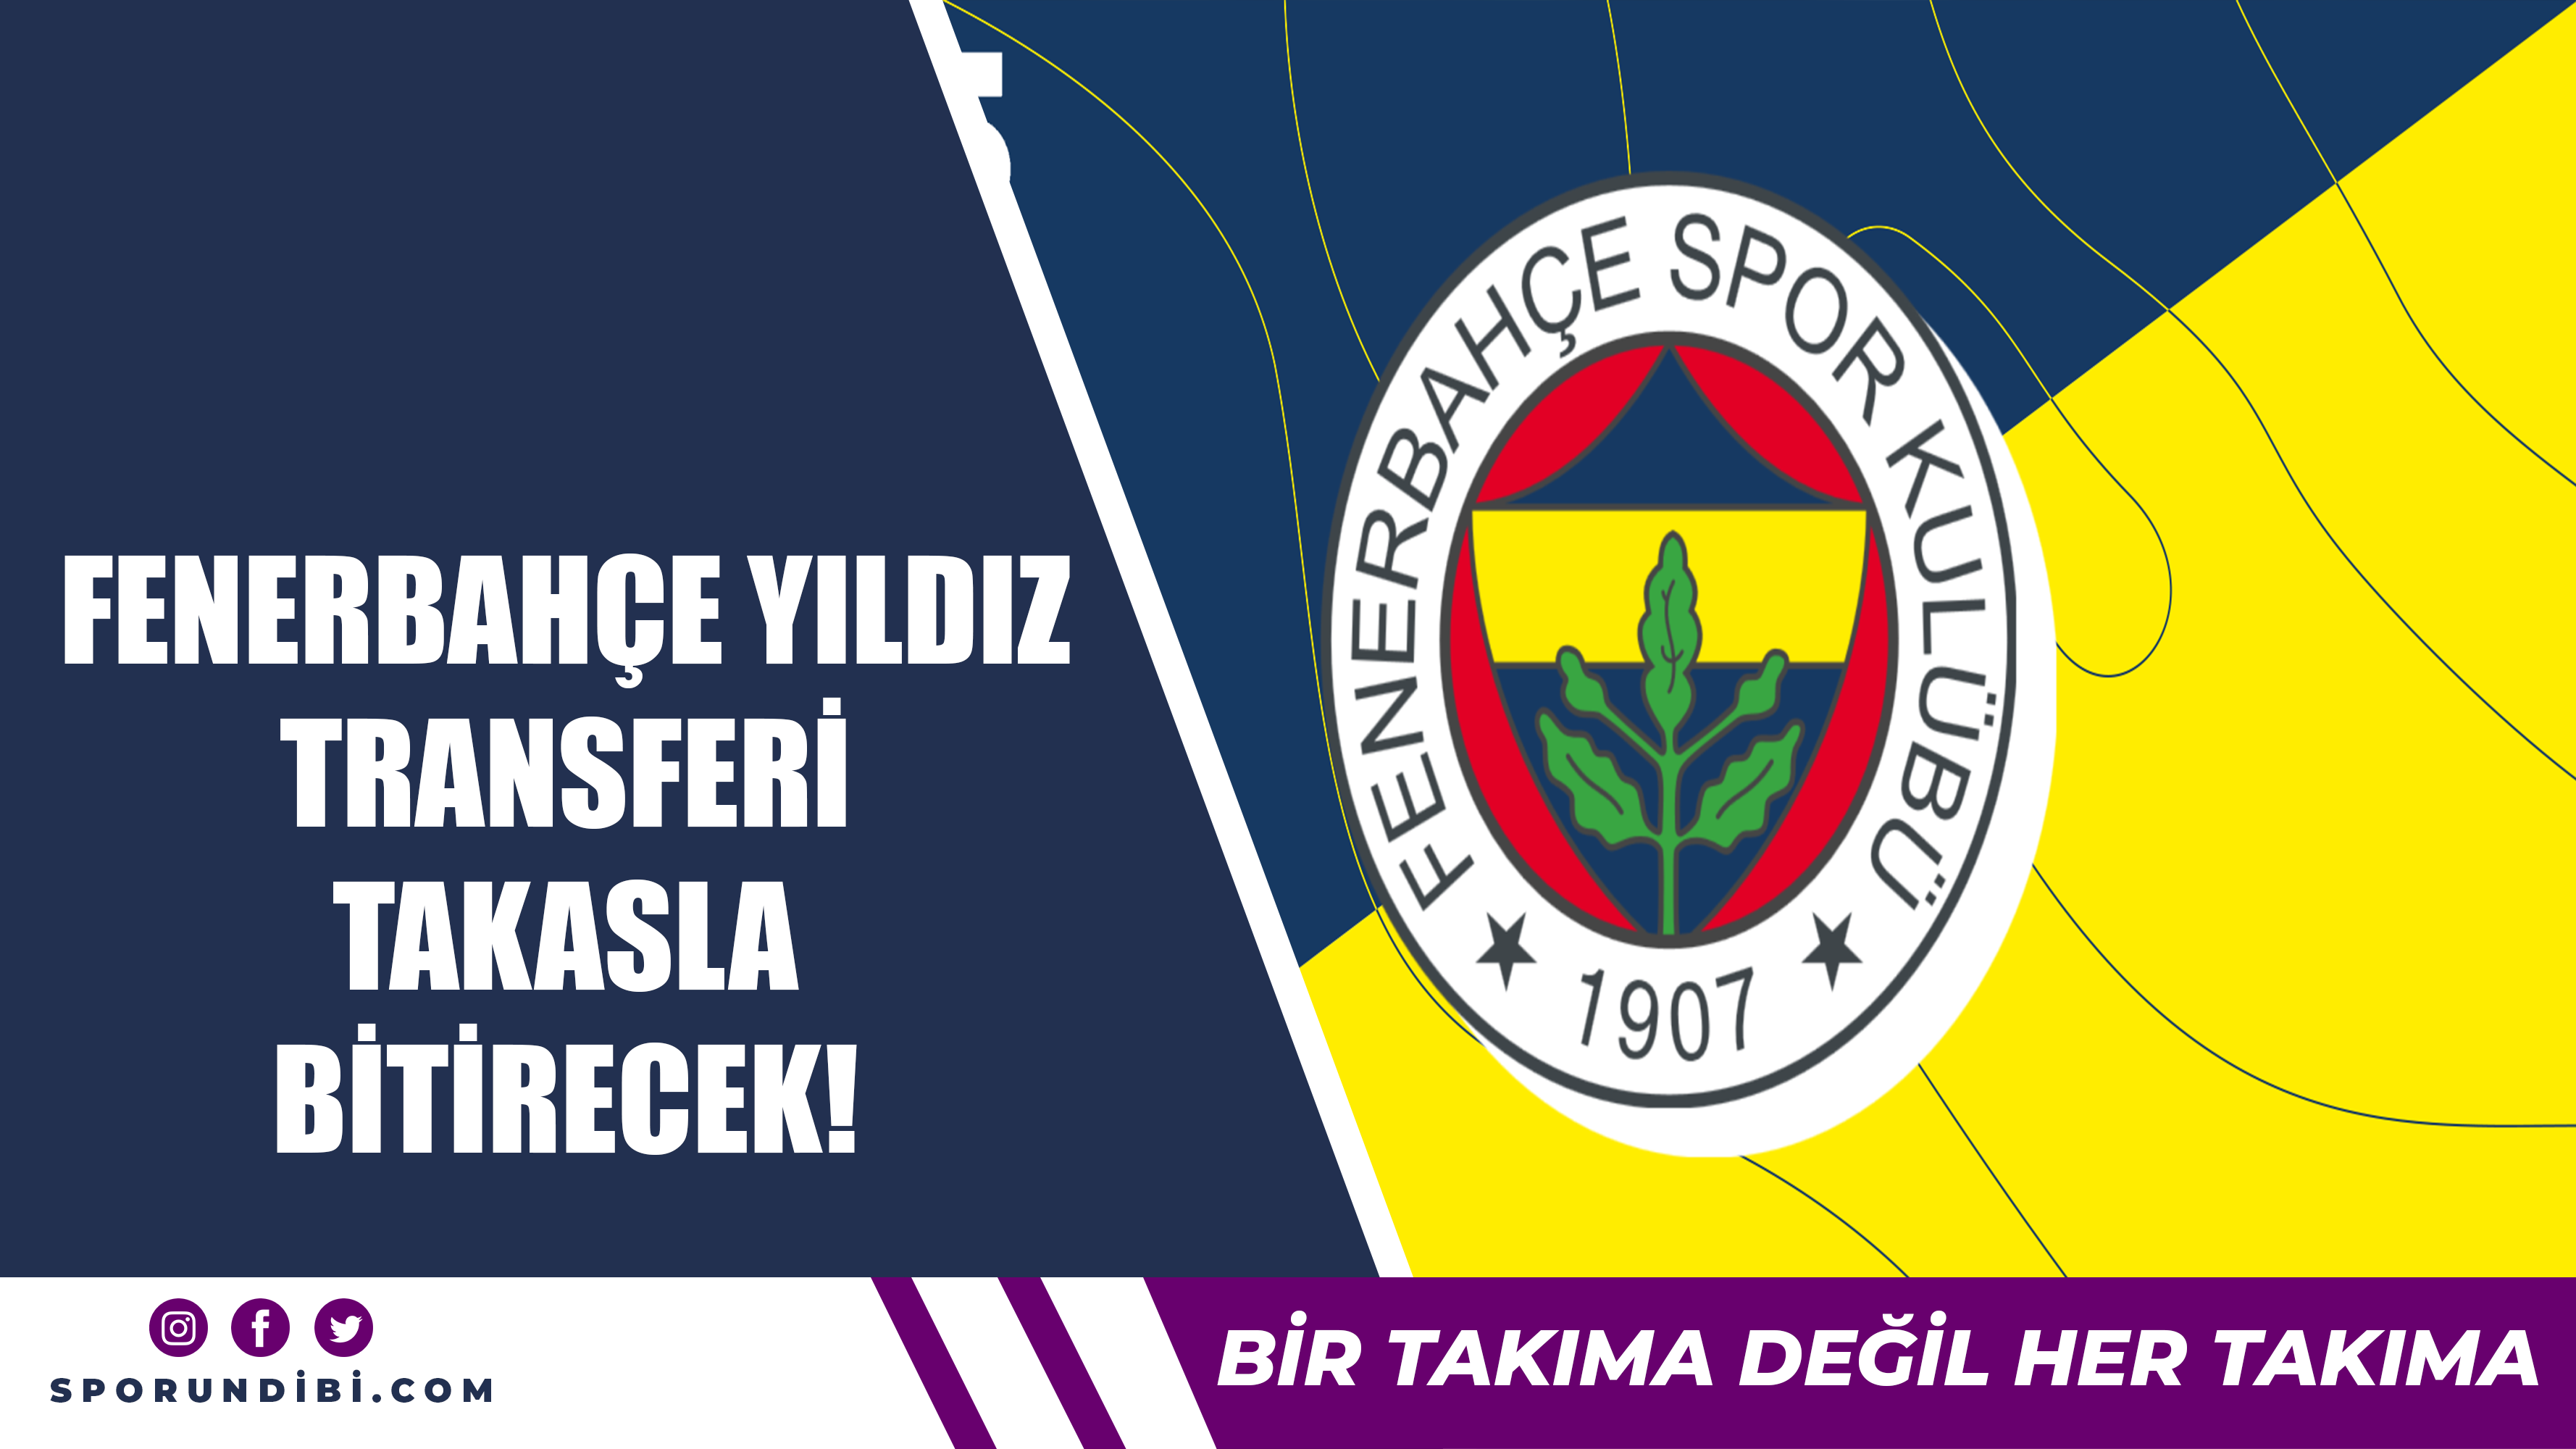 Fenerbahçe yıldız transferi takasla bitirecek!